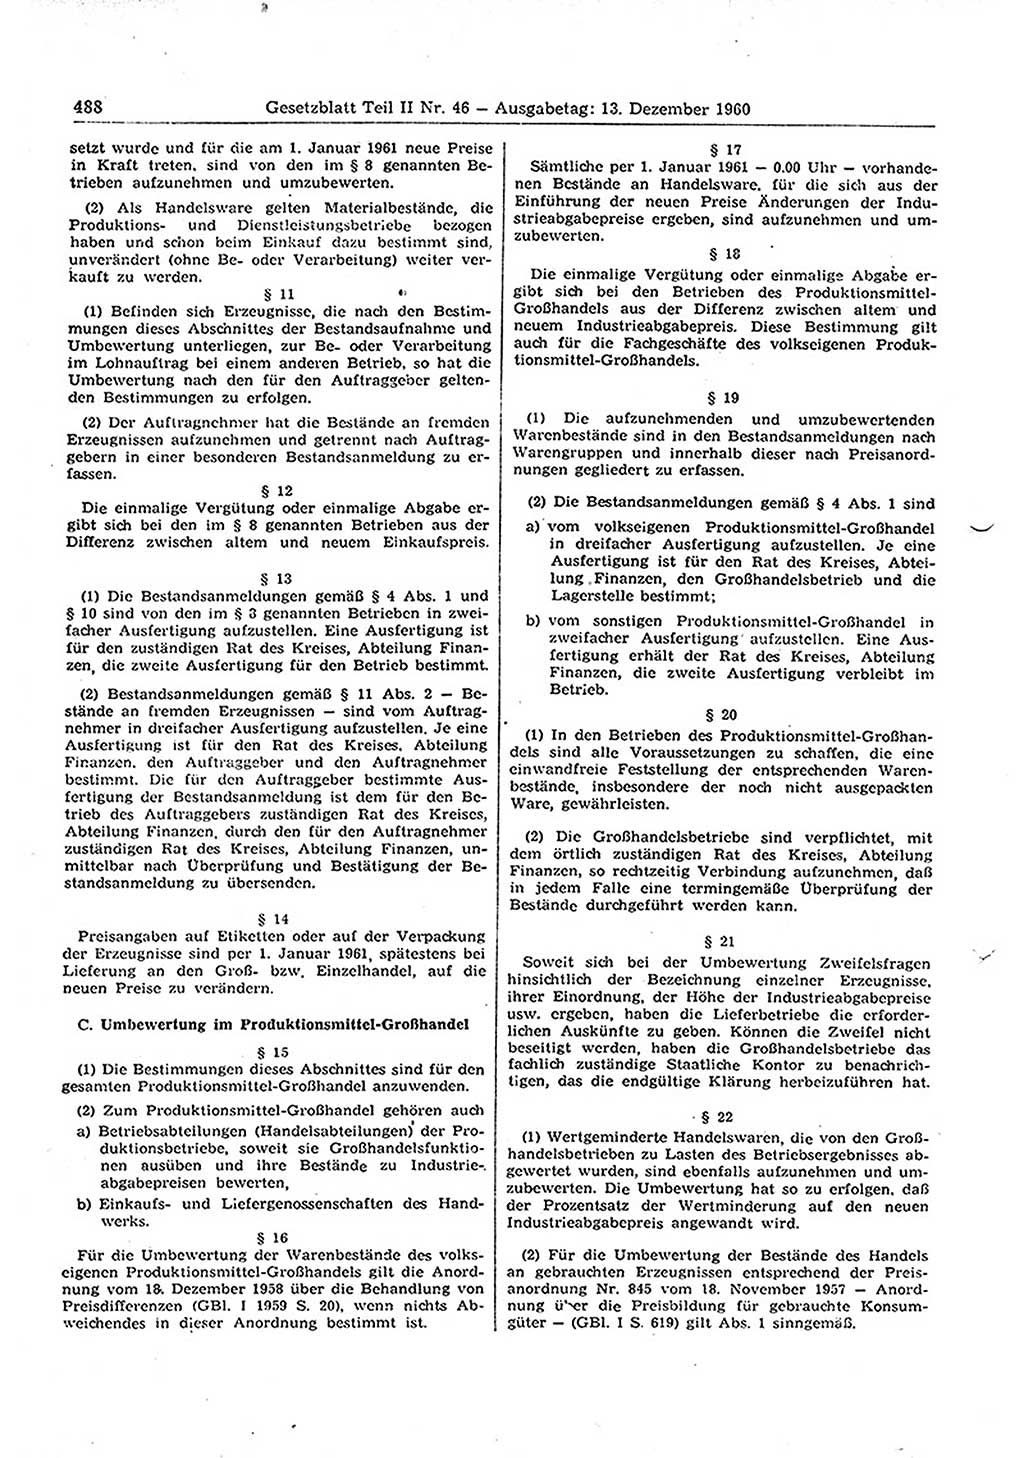 Gesetzblatt (GBl.) der Deutschen Demokratischen Republik (DDR) Teil ⅠⅠ 1960, Seite 488 (GBl. DDR ⅠⅠ 1960, S. 488)